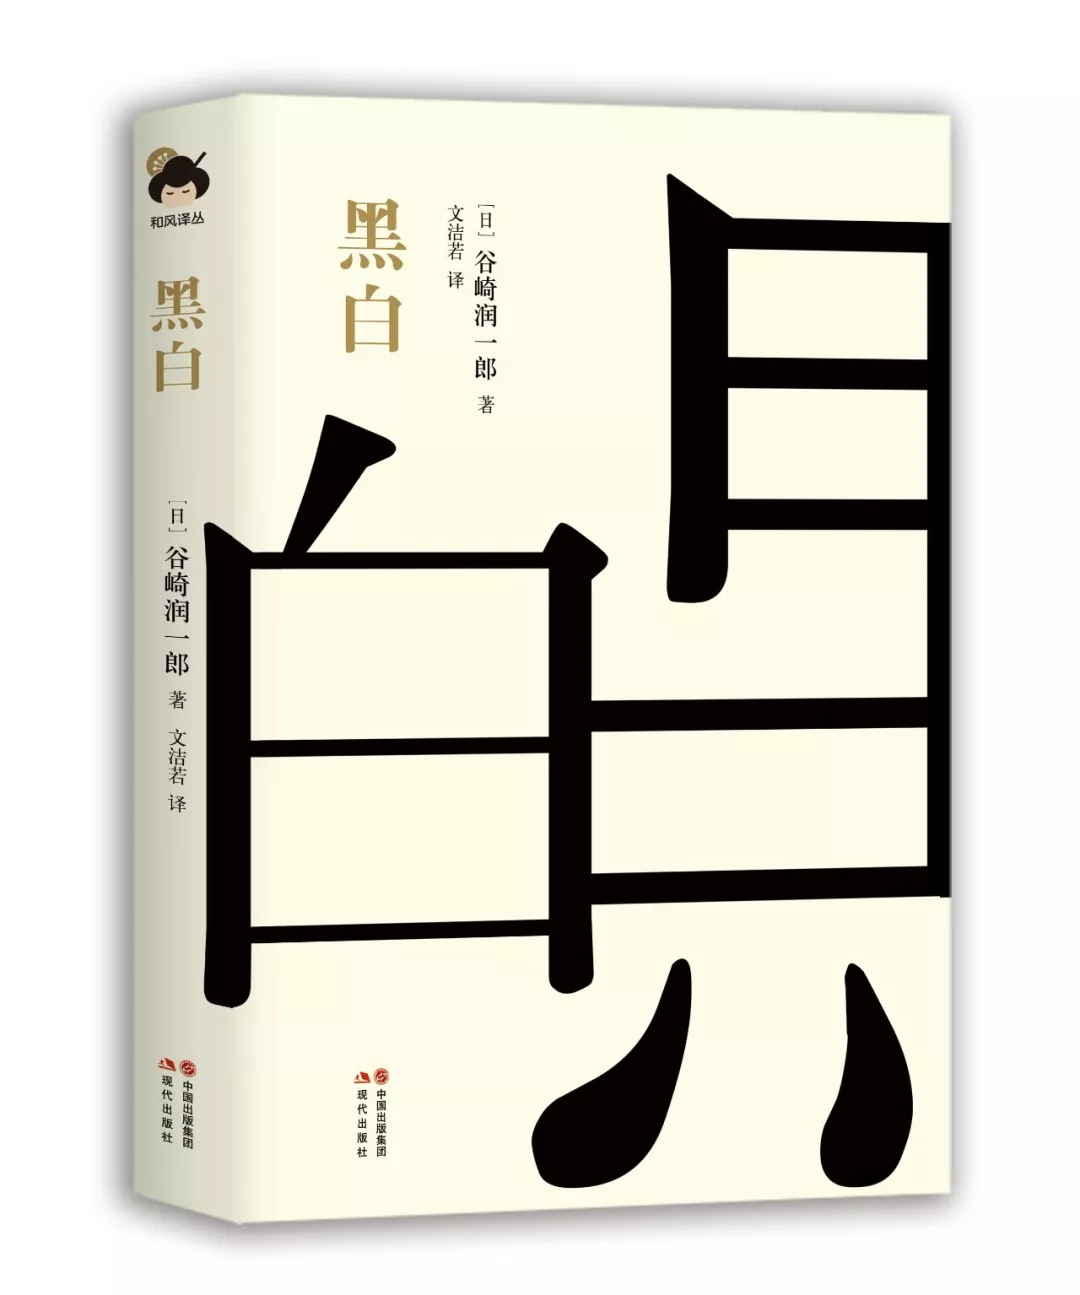 谷崎润一郎名作译本《少将滋干之母》《猫与庄造与两个女人》出版- 资讯咖